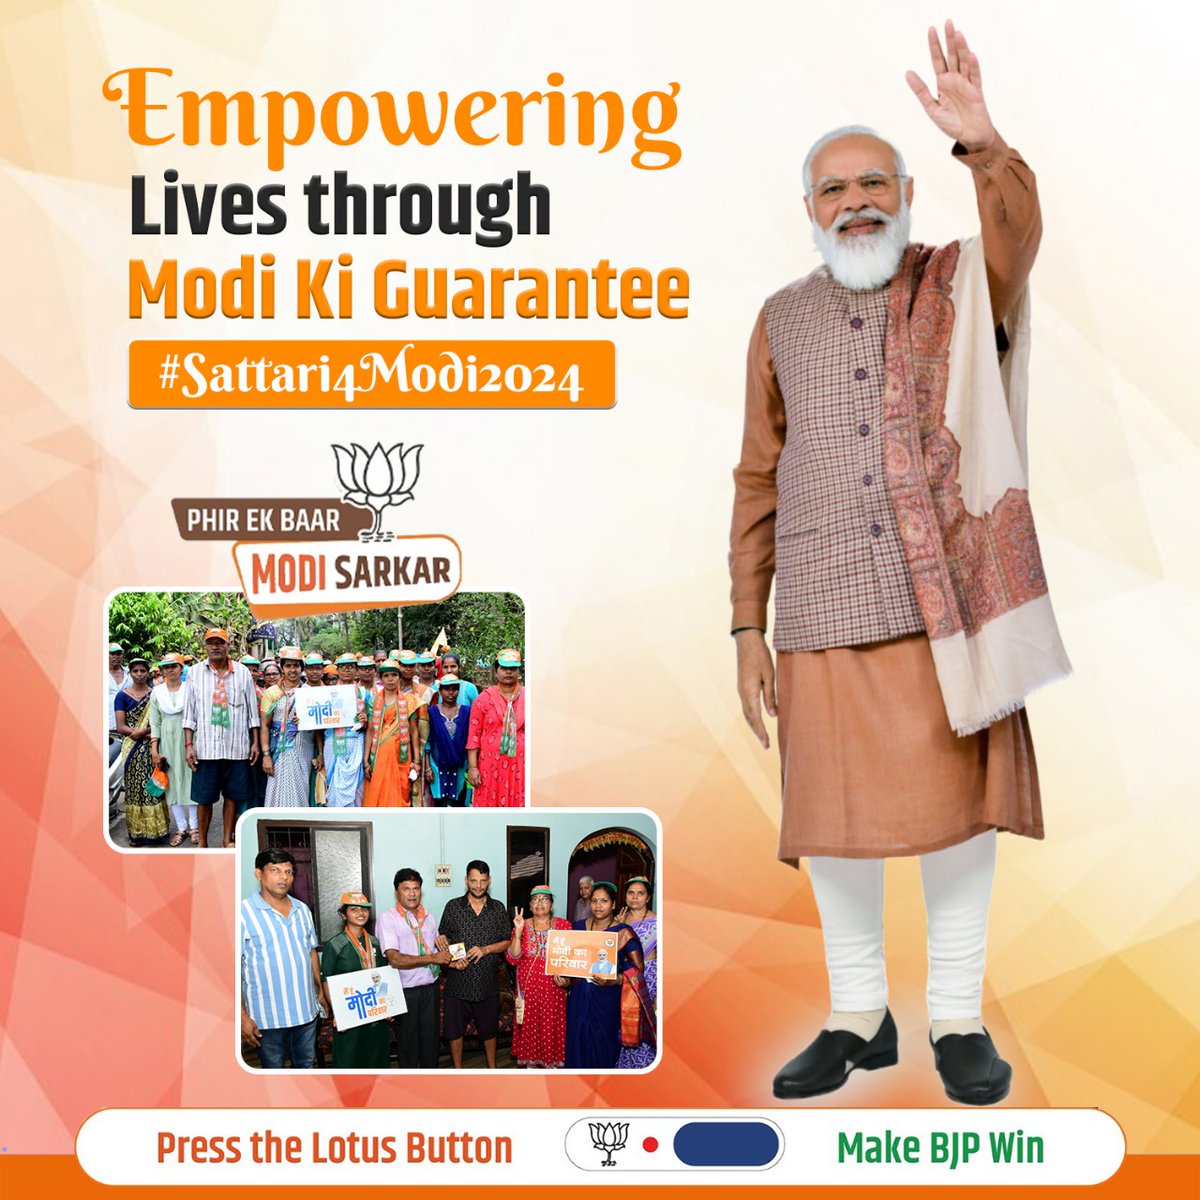 PM Modi's commitment to inclusive growth resonates in sattari, where every corner witnesses transformative development #SattariForModi2024